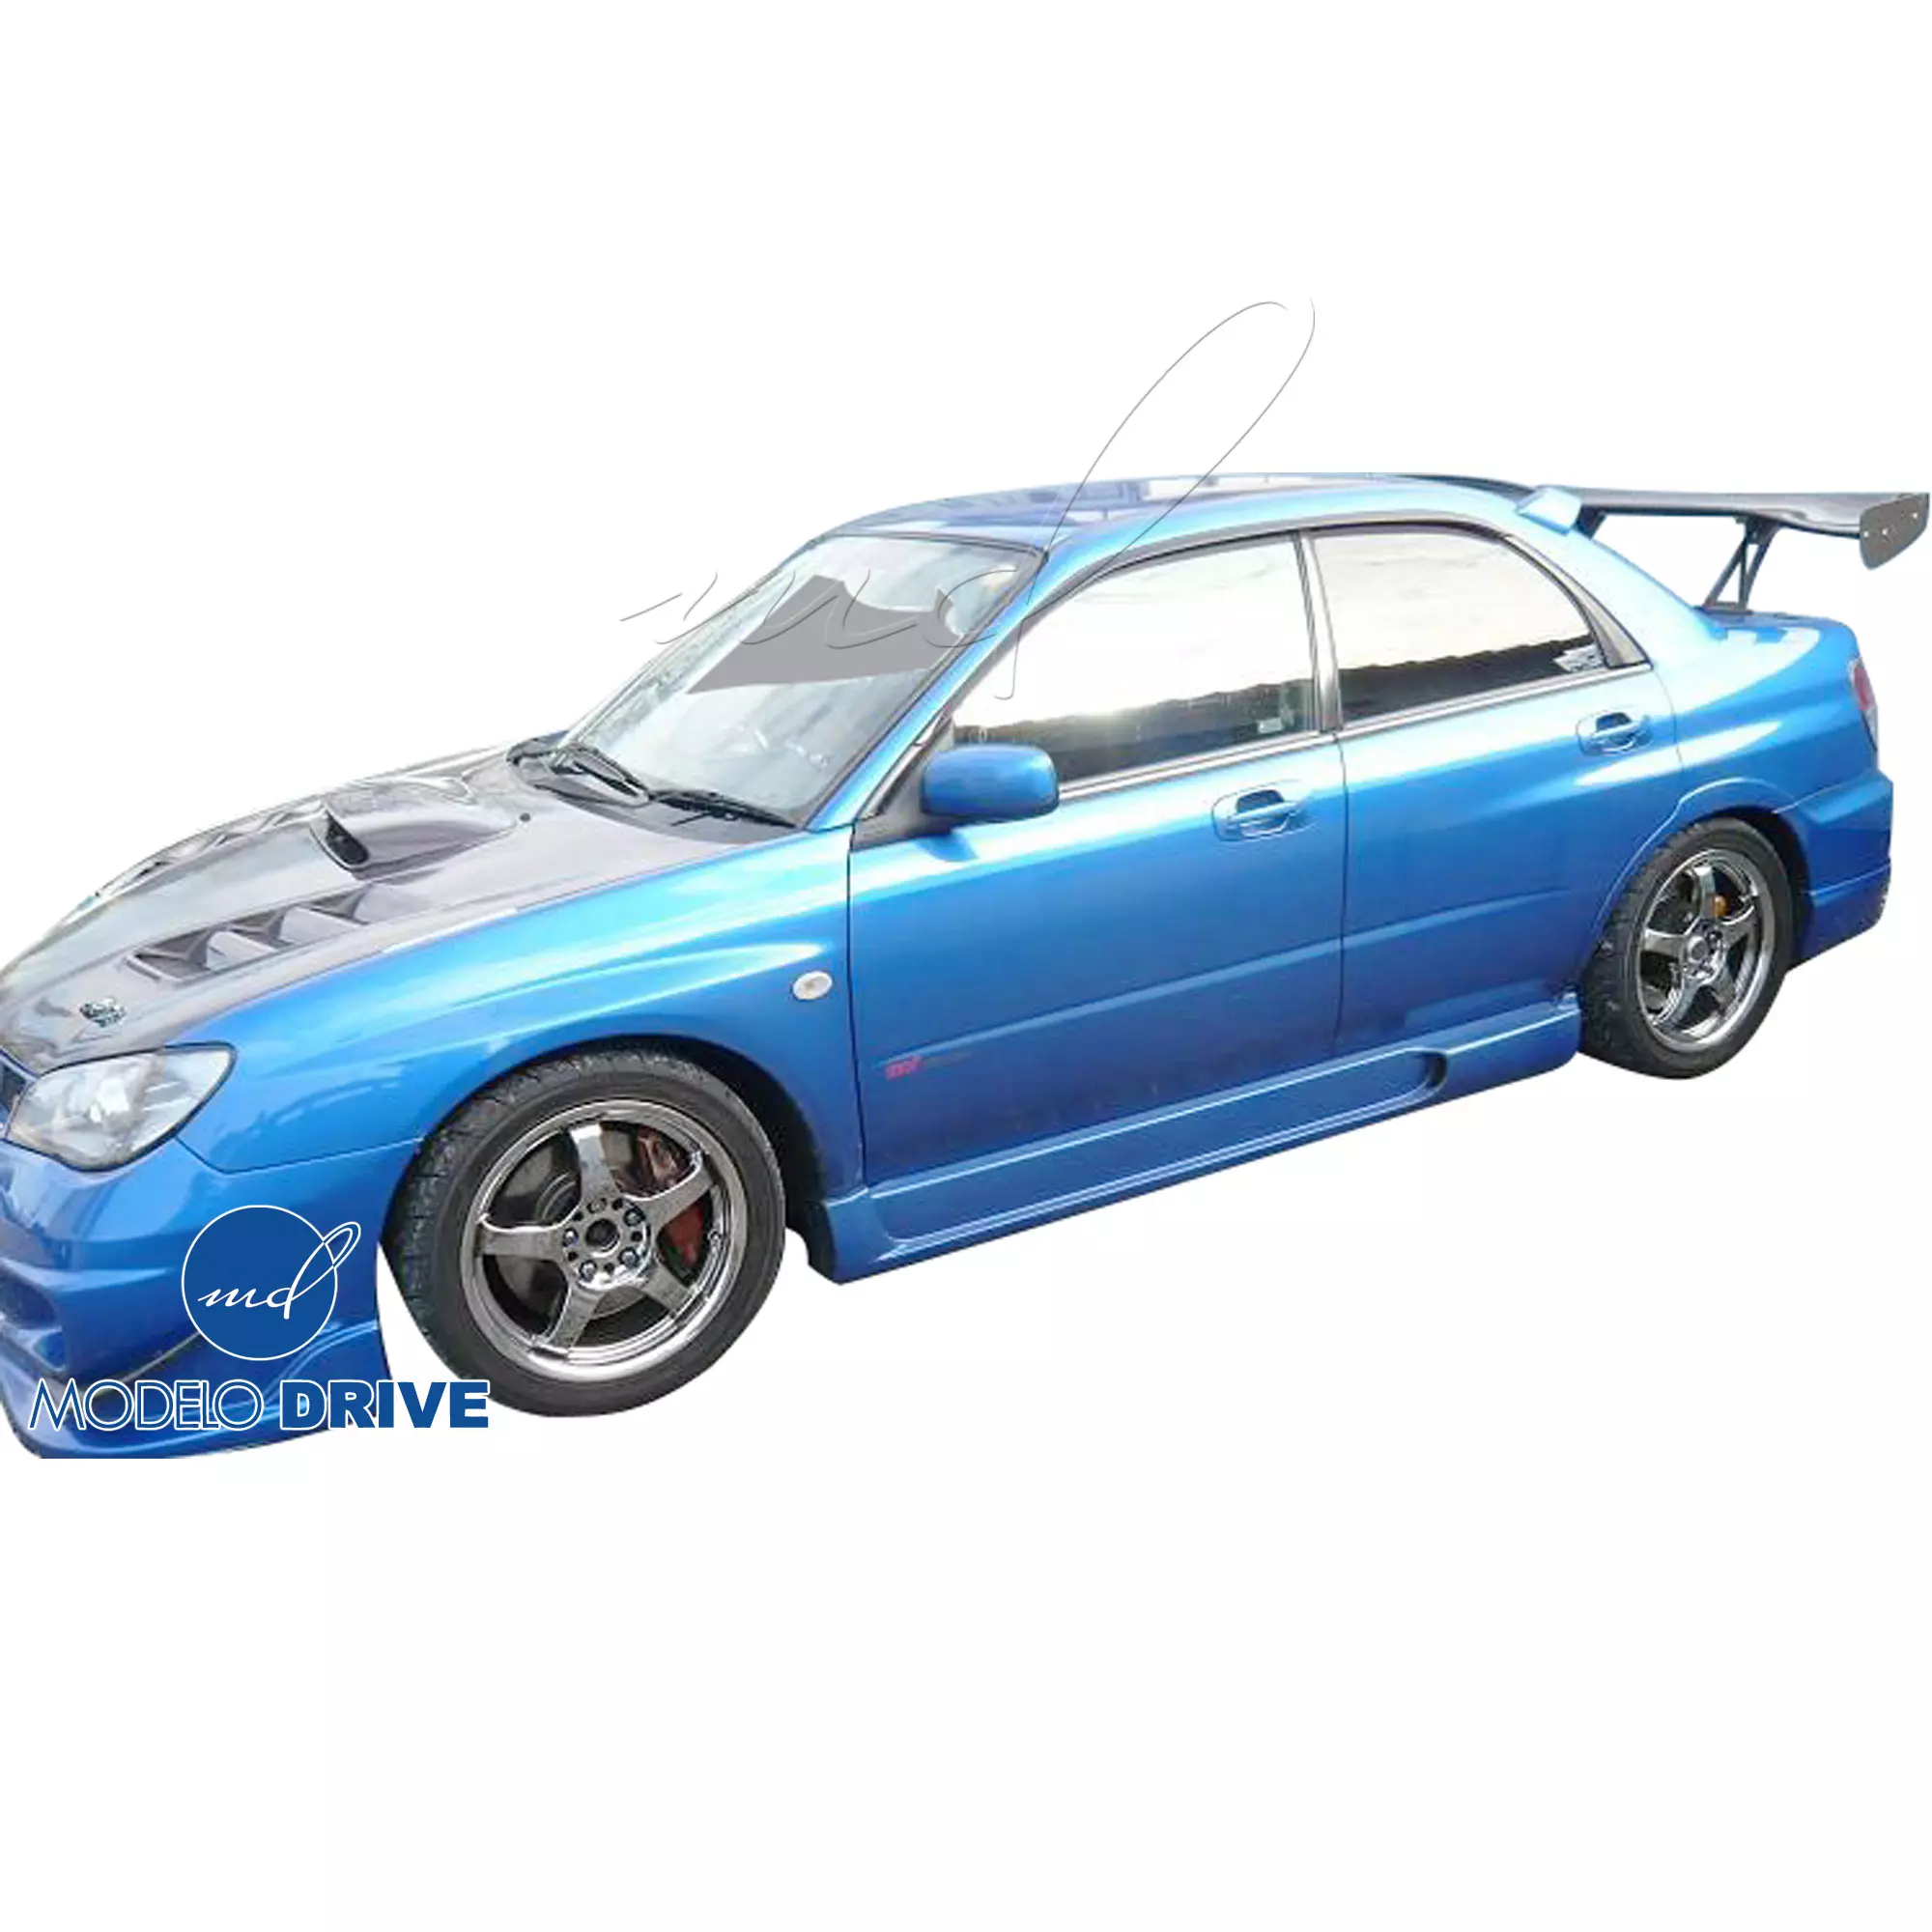 ModeloDrive FRP ING Body Kit 4pc > Subaru WRX 2006-2007 > 4dr Sedan - Image 11